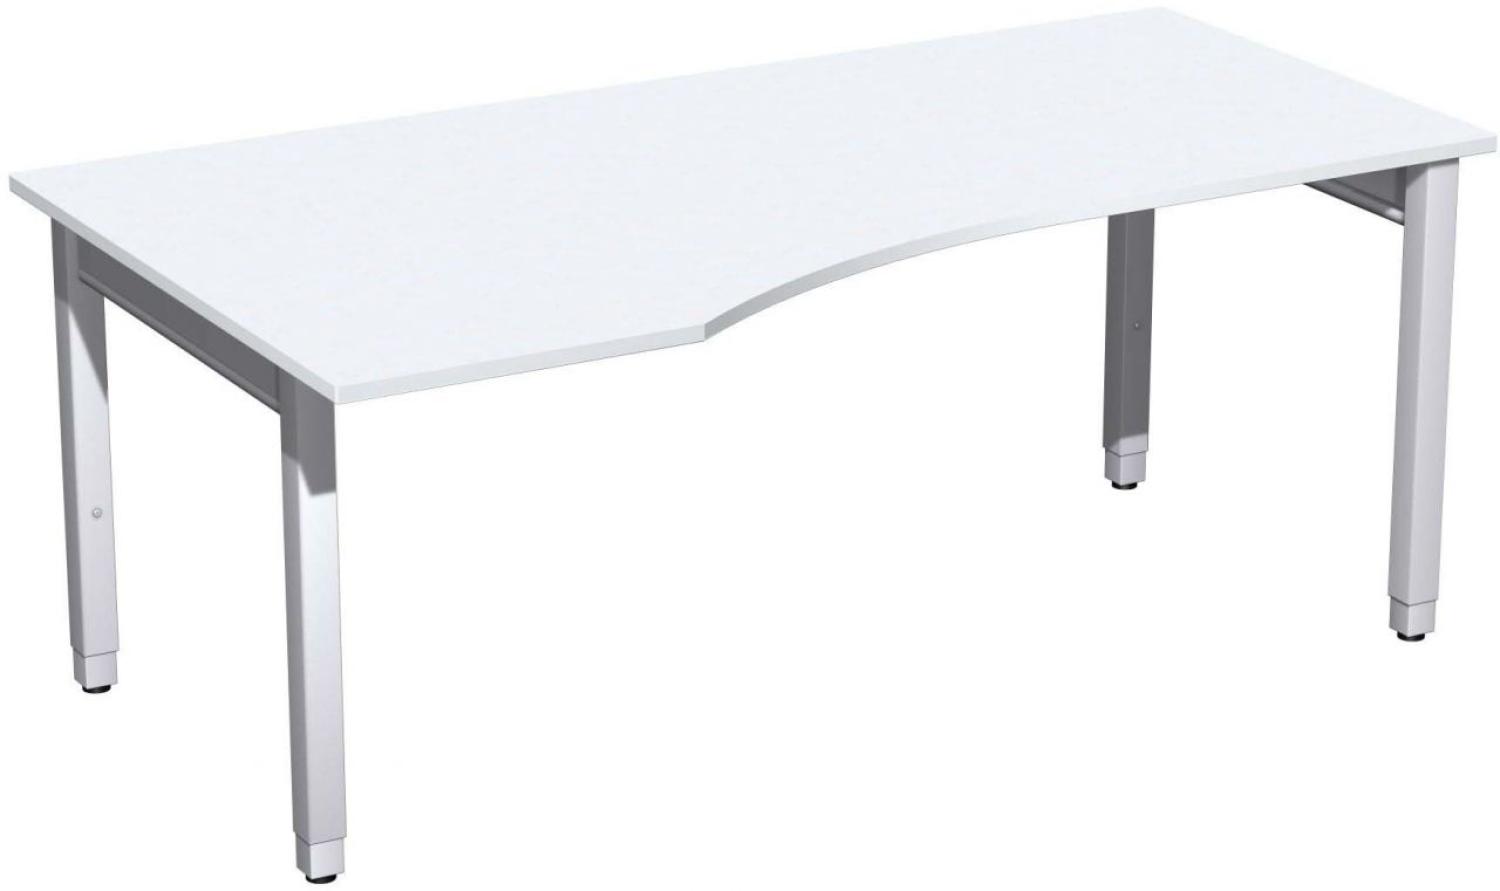 PC-Schreibtisch '4 Fuß Pro Quadrat' links höhenverstellbar, 180x100x68-86cm, Weiß / Silber Bild 1